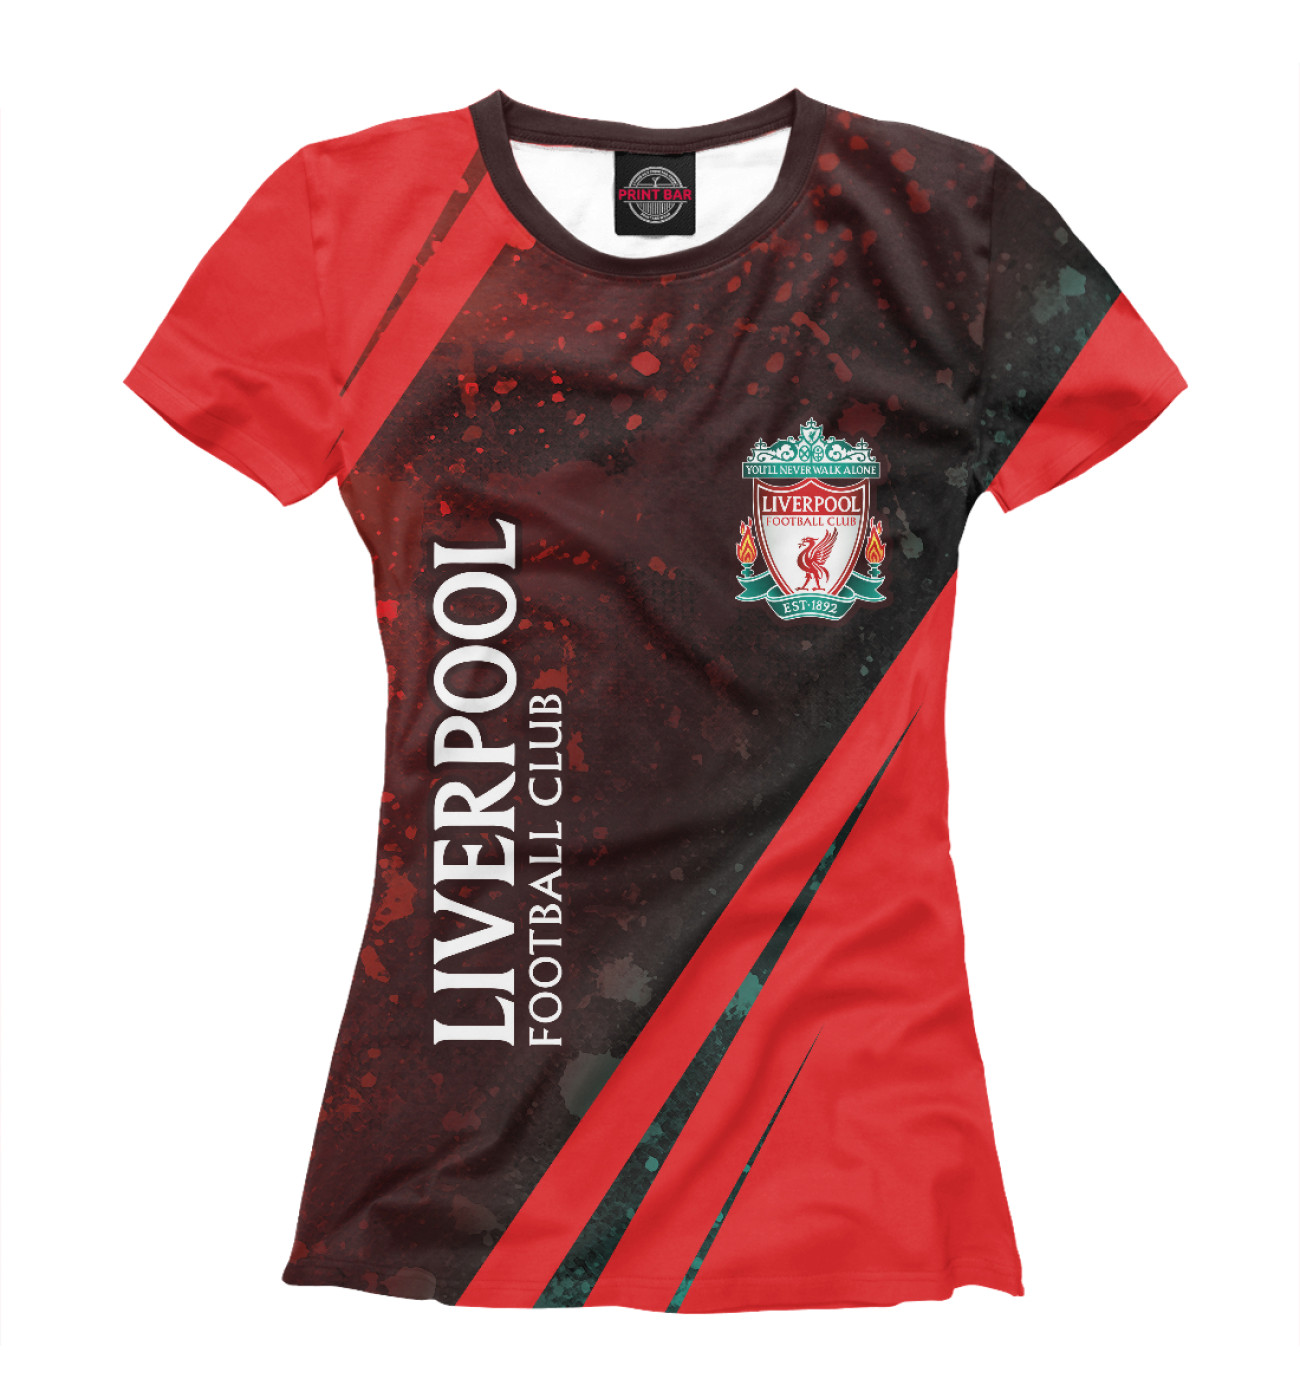 Женская Футболка Liverpool / Ливерпуль, артикул: LVP-850951-fut-1